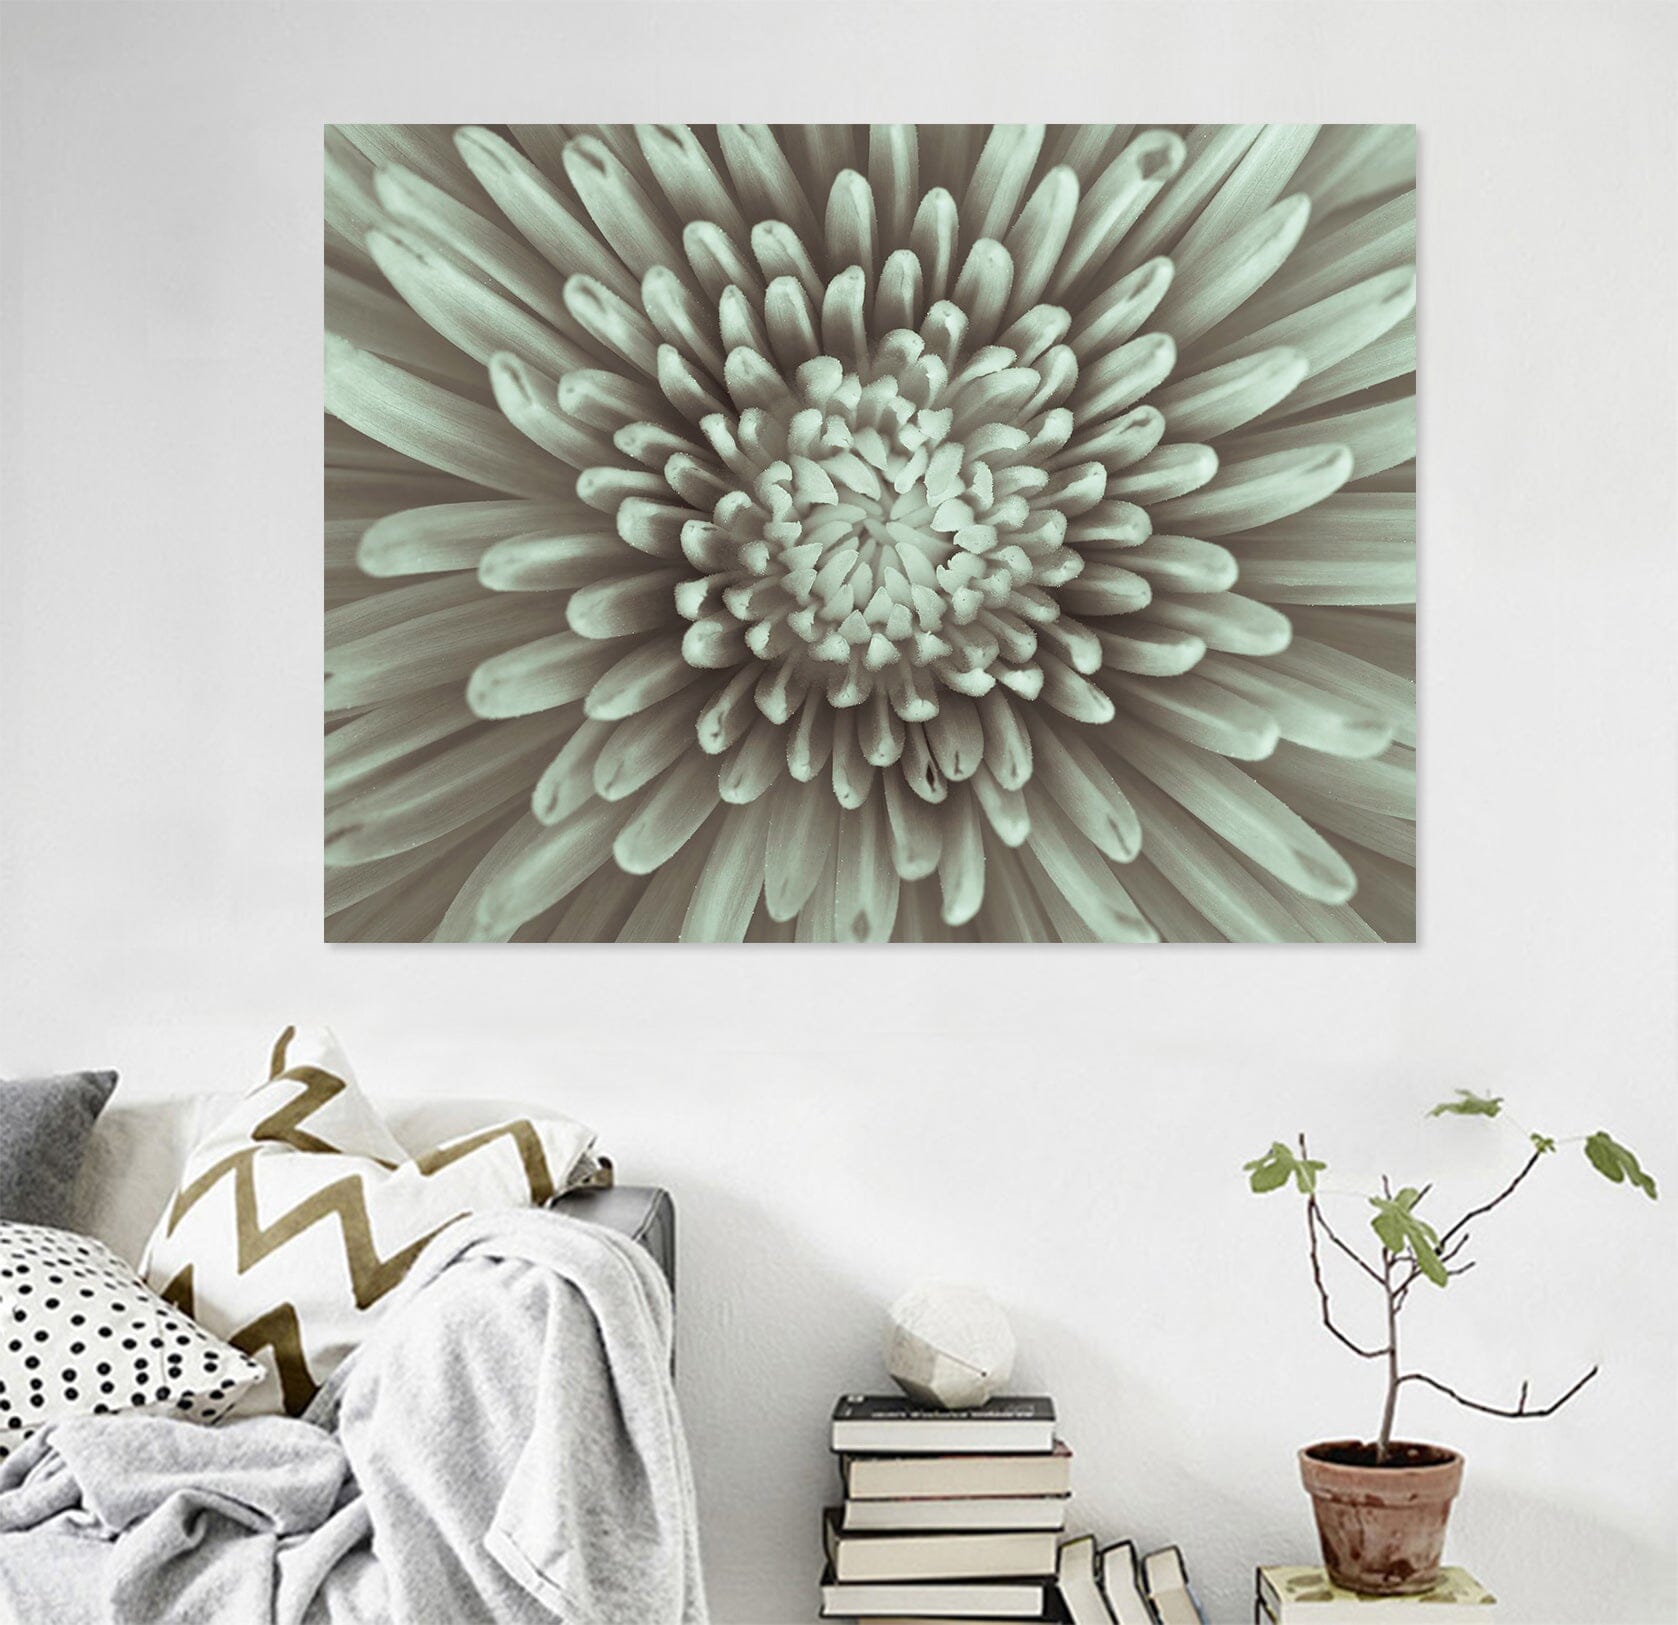 3D Chrysanthemum 013 Assaf Frank Wall Sticker Wallpaper AJ Wallpaper 2 